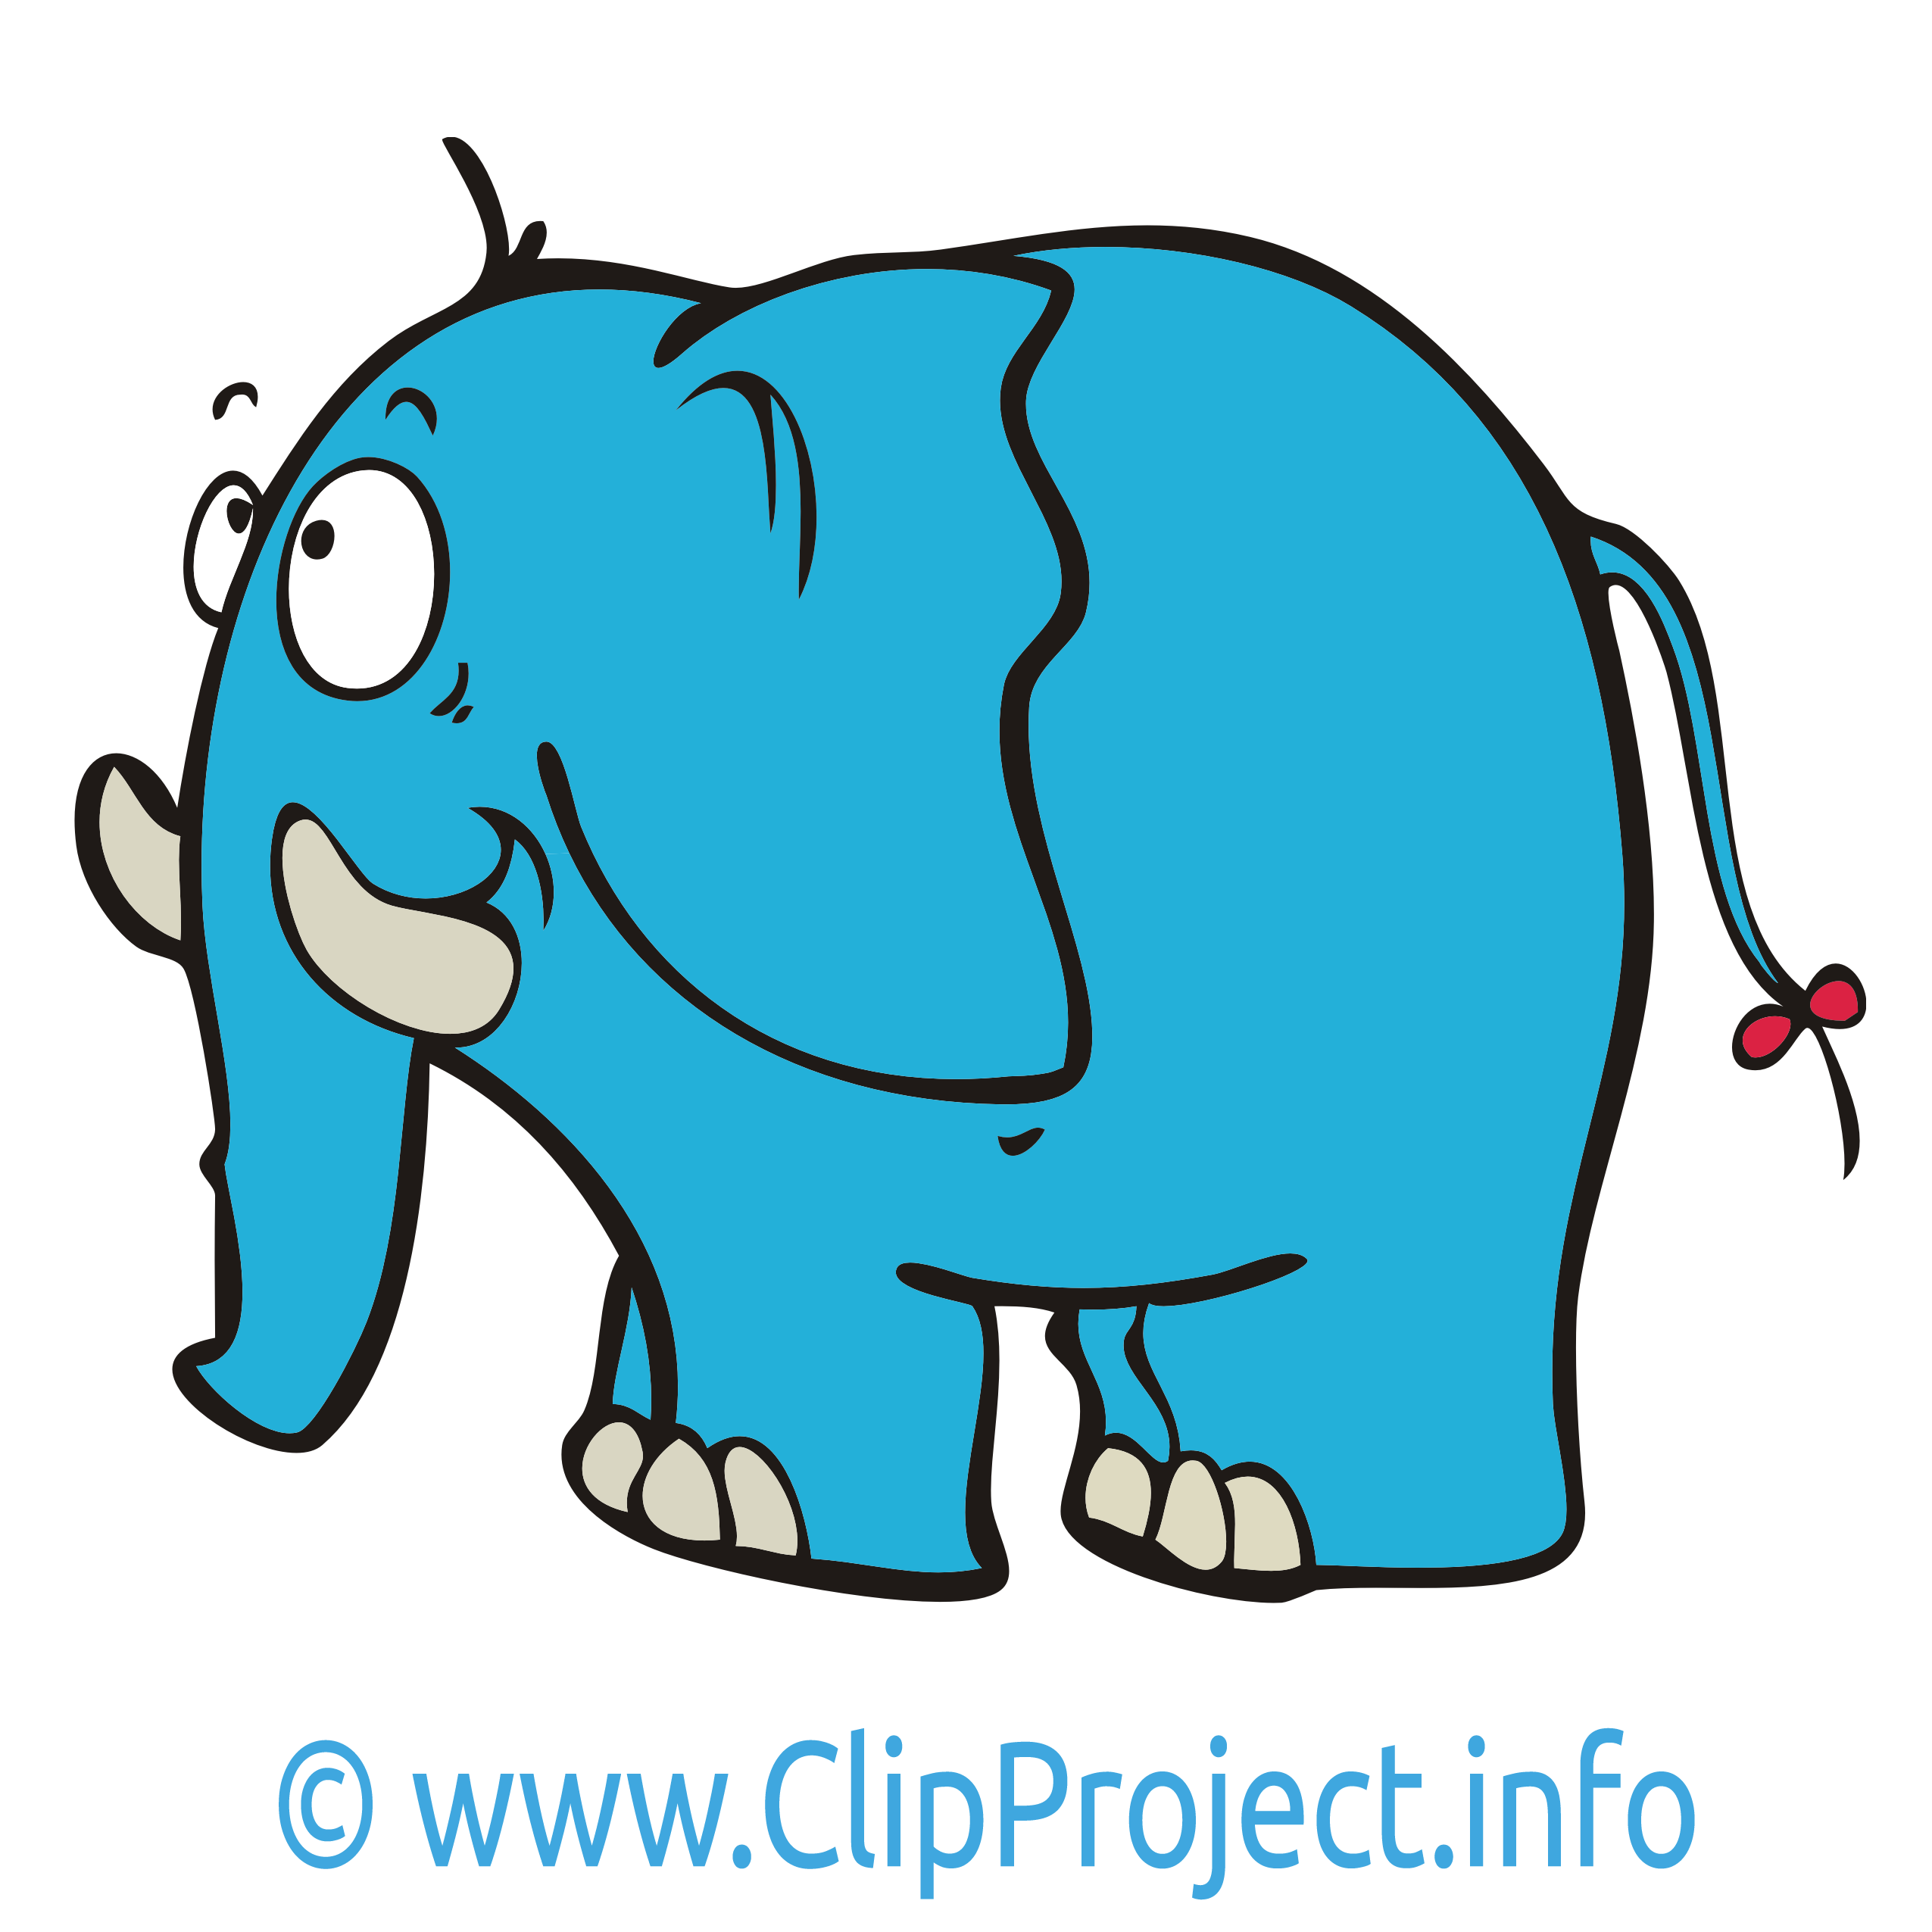 clipart elephant gratuit - photo #29